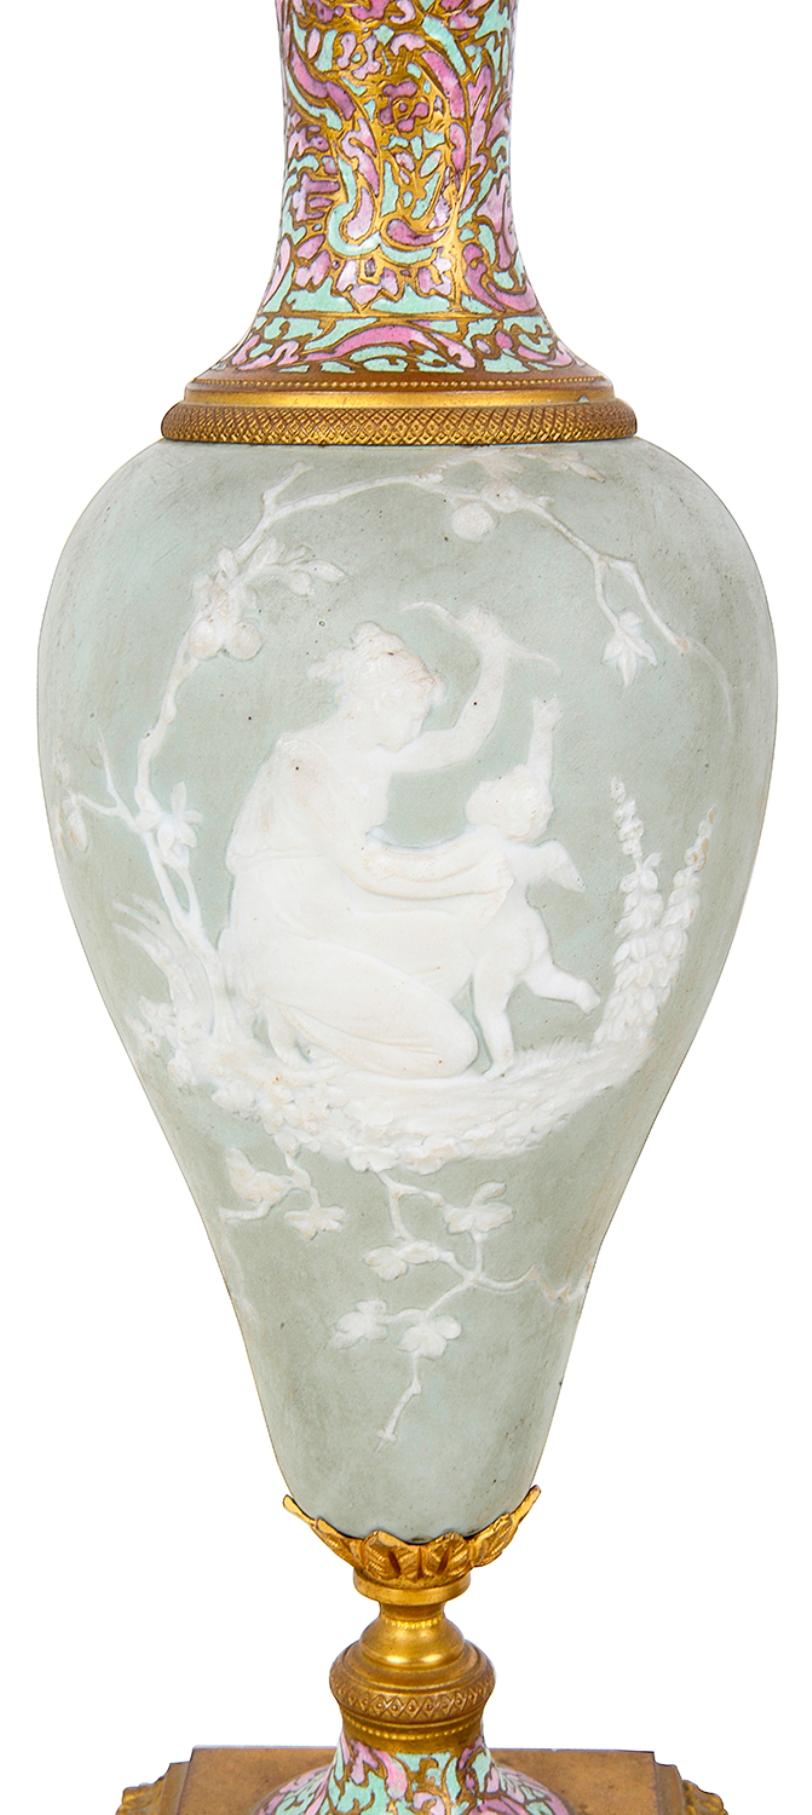 Paire de vases en porcelaine de style Wedgwood de bonne qualité, datant de la fin du XIXe siècle, représentant chacun des scènes classiques, montés sur des supports en bronze doré avec une décoration en émail champlevé multicolore.
 